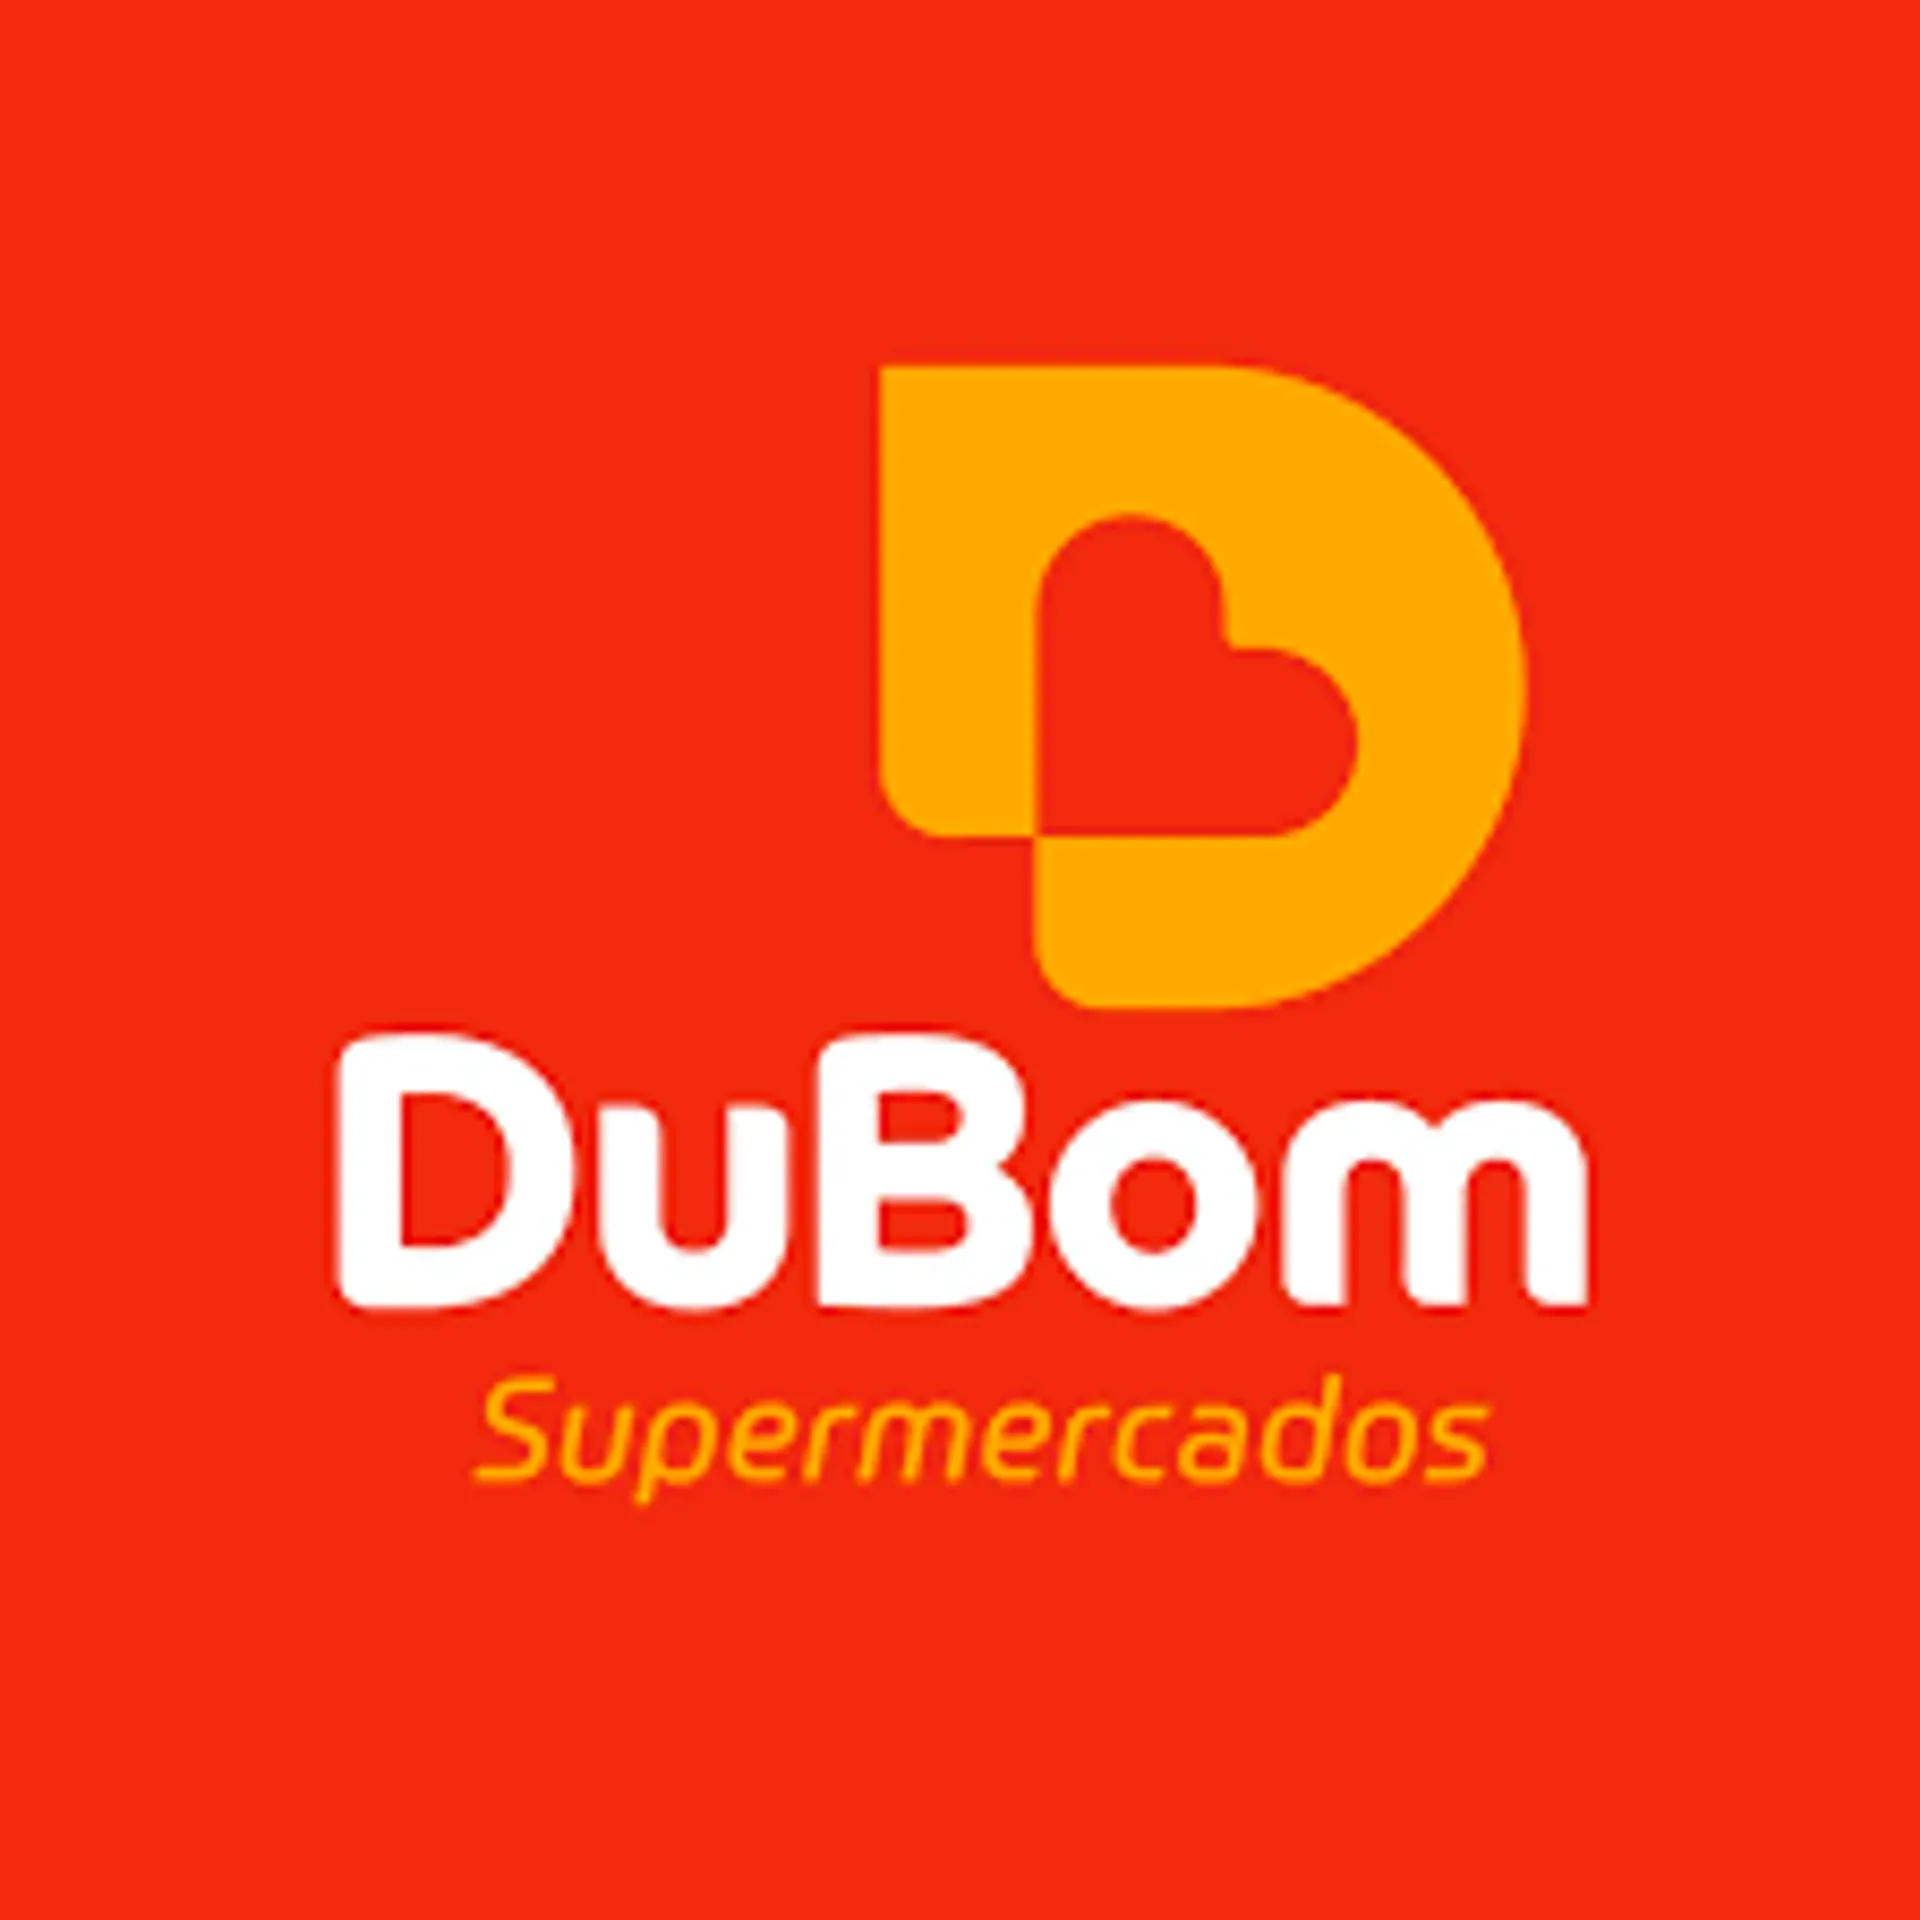 DUBOM SUPERMERCADOS logo